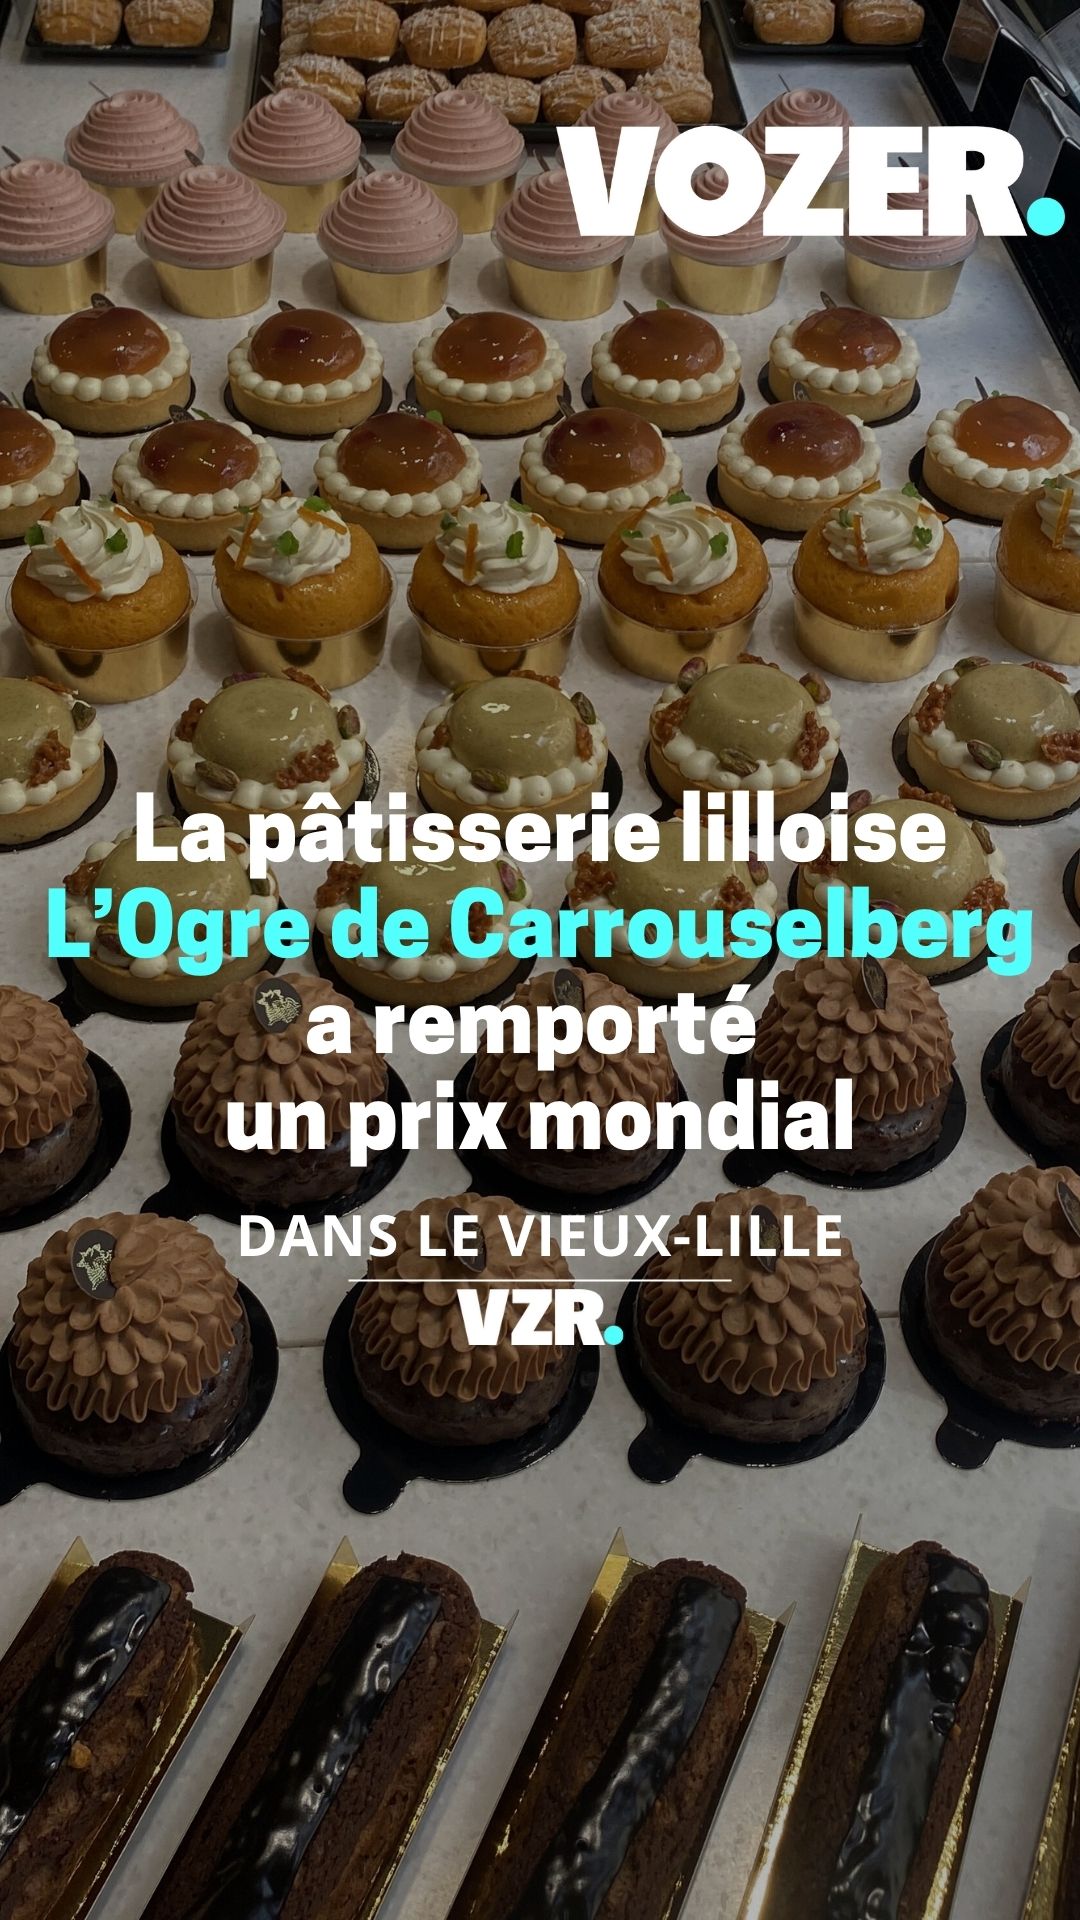  La pâtisserie lilloise L’Ogre de Carrouselberg a remporté un prix mondial